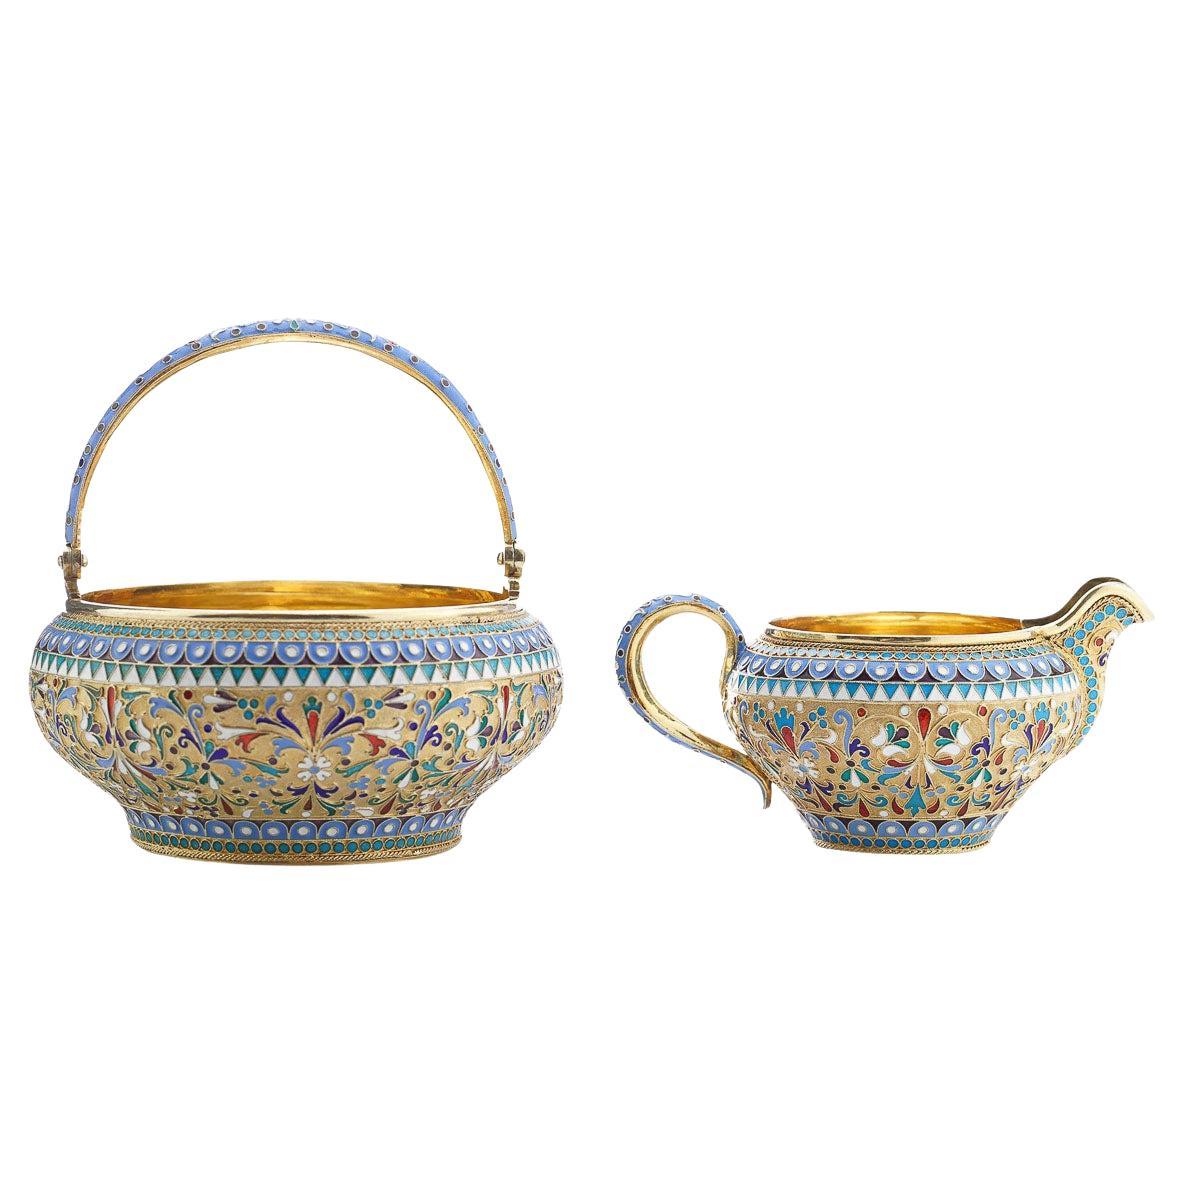 19th Century Russian Silver & Enamel Sugar Bowl & Cream Jug, Saltykov, c.1890